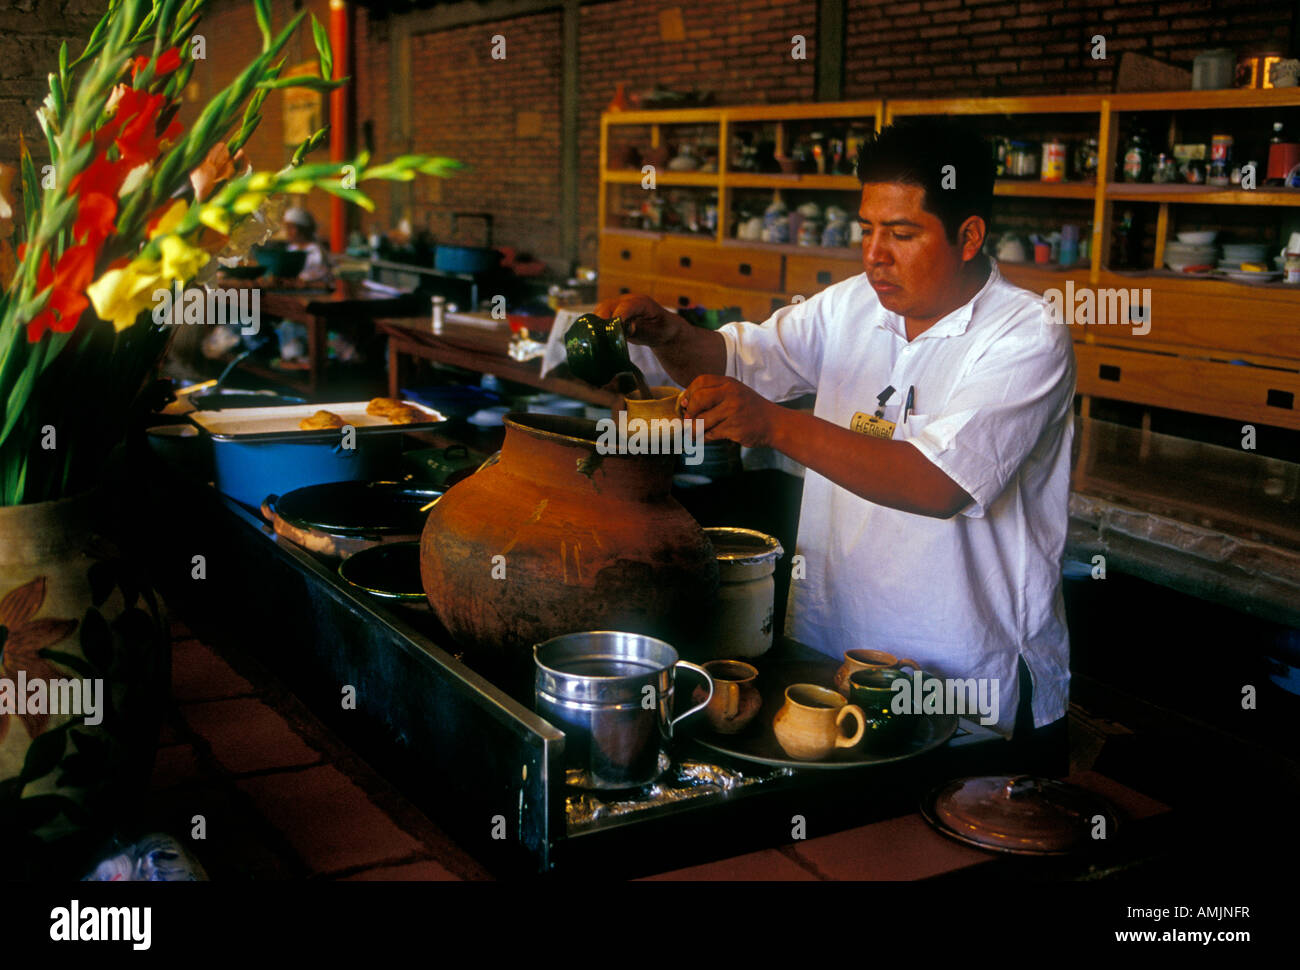 L'homme du Mexique, cuisinier, la cuisine, la préparation des aliments, la nourriture mexicaine et verre, restaurant mexicain, restaurant la Capilla, zaachila, état de Oaxaca, Mexique Banque D'Images